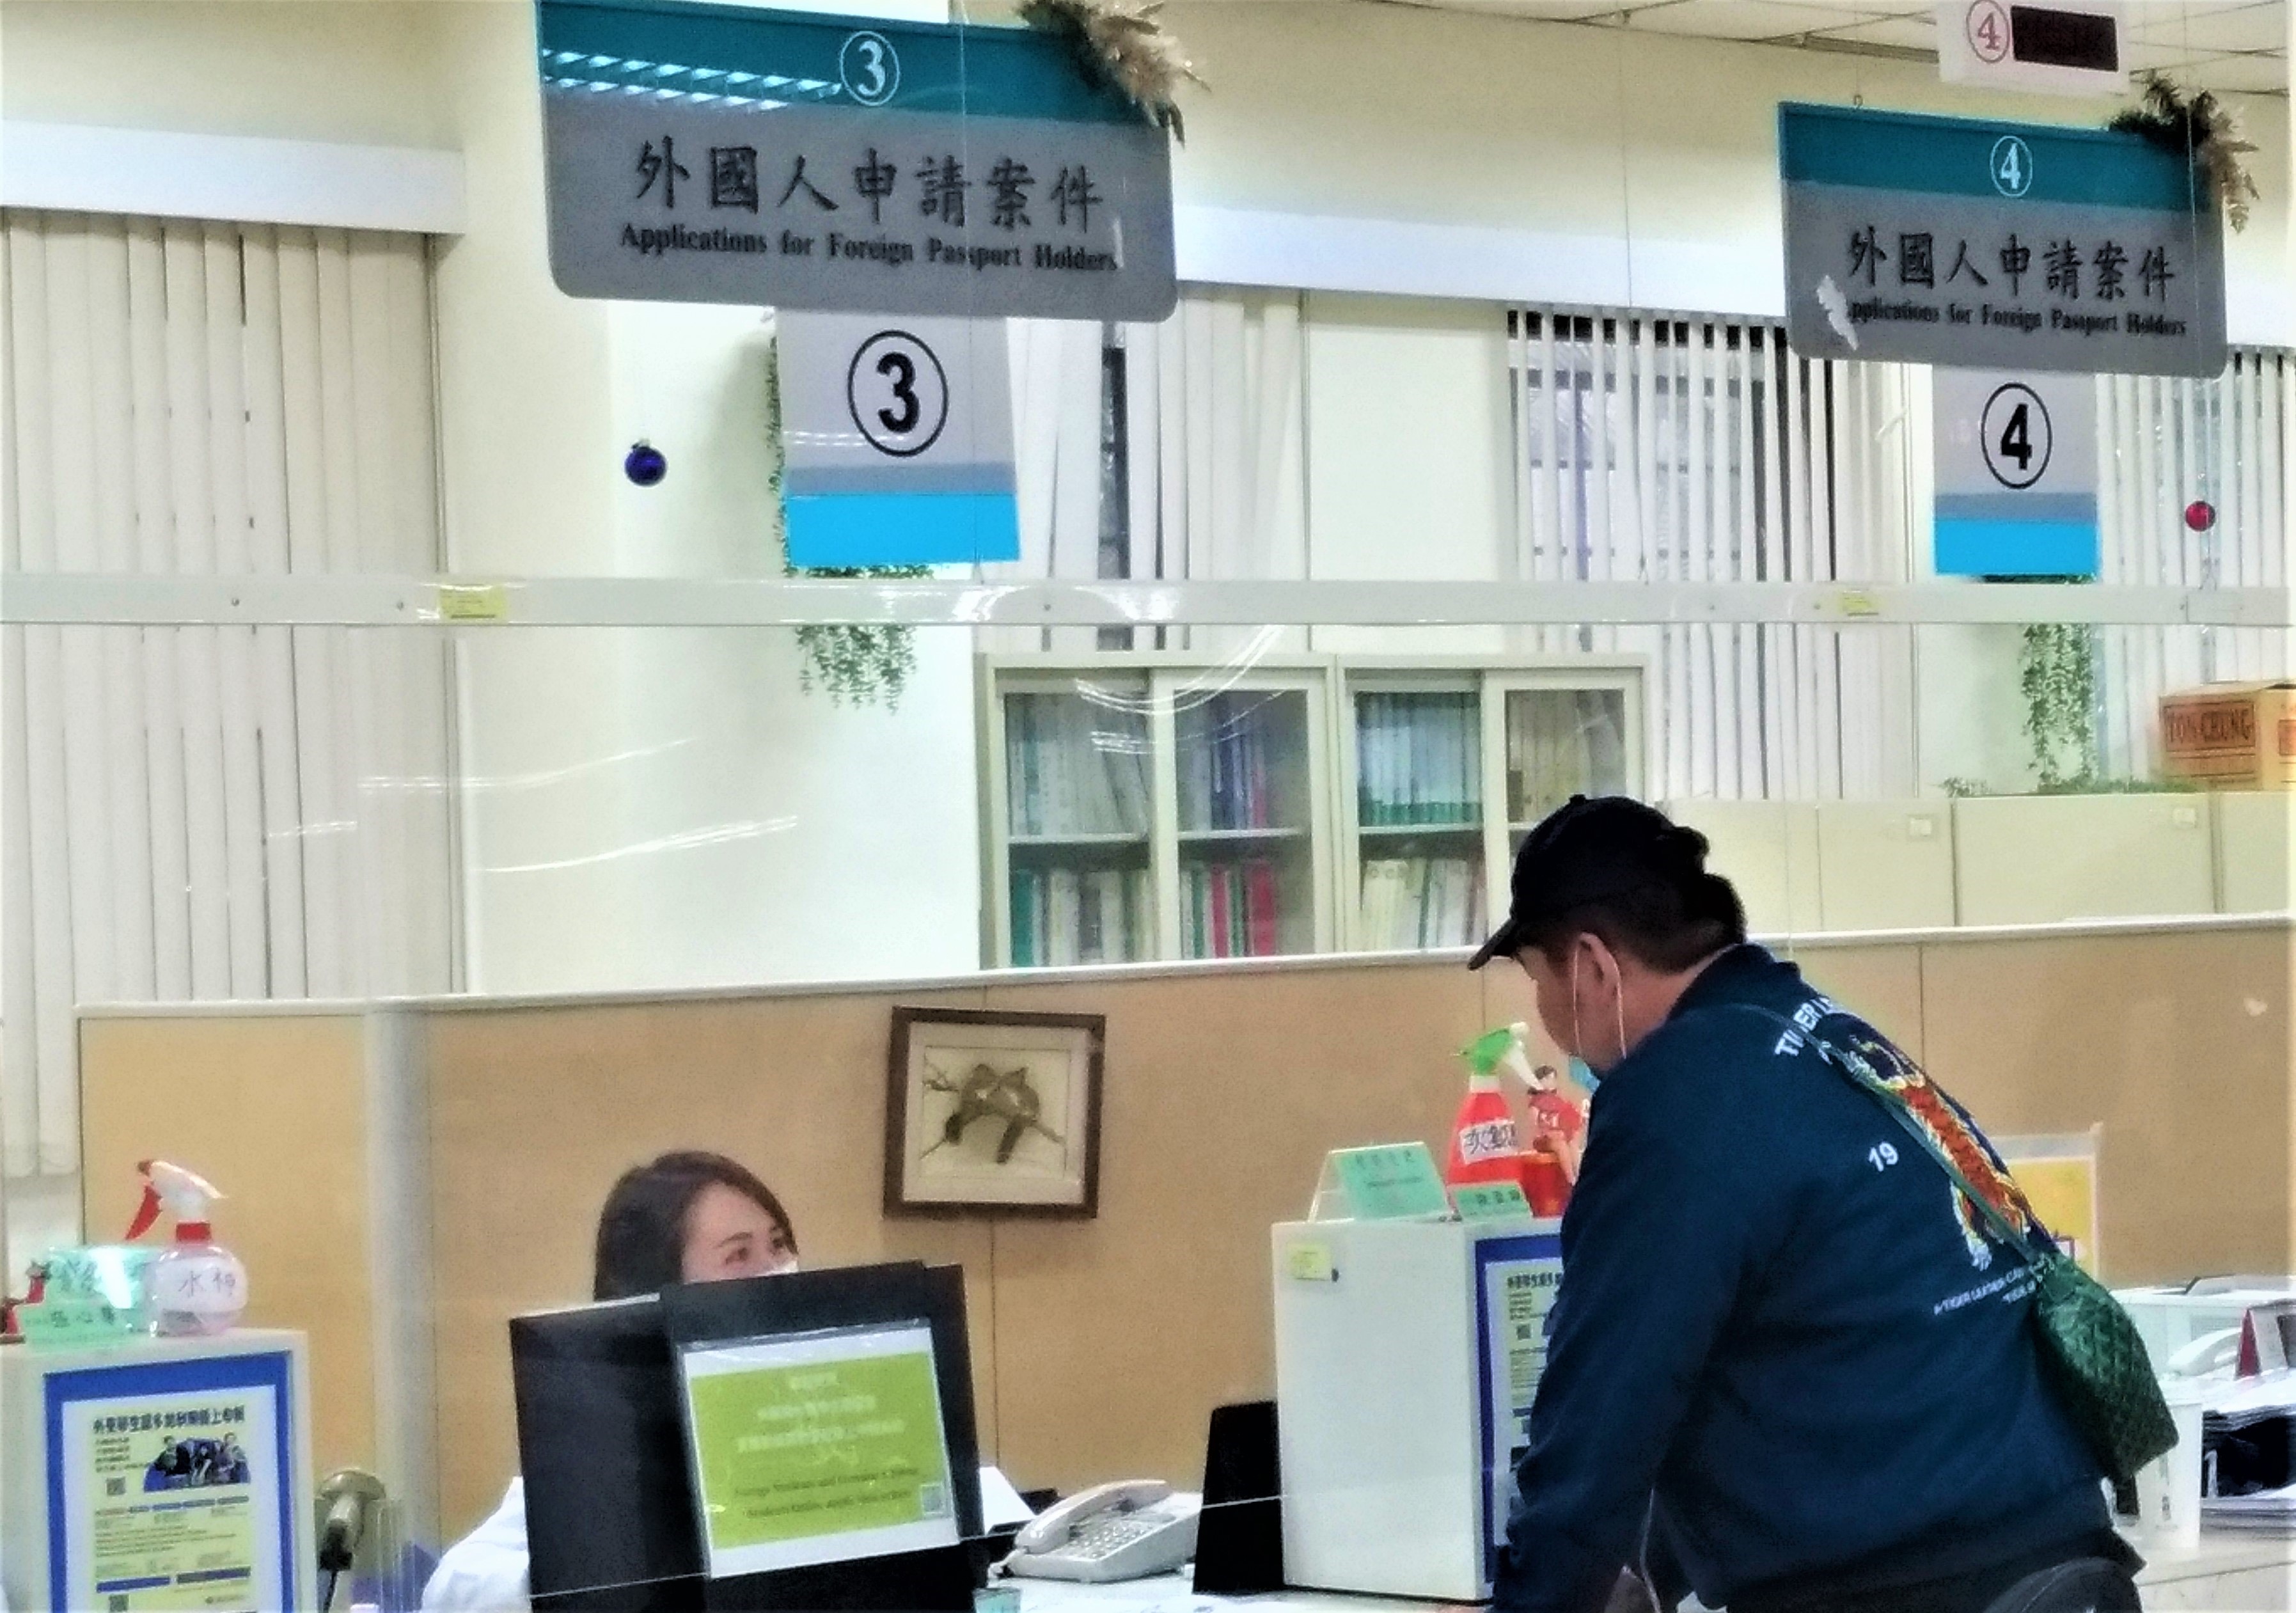 Masyarakat pergi ke Stasiun Layanan untuk mengurus dokumen. (Sumber: Departemen Imigrasi)